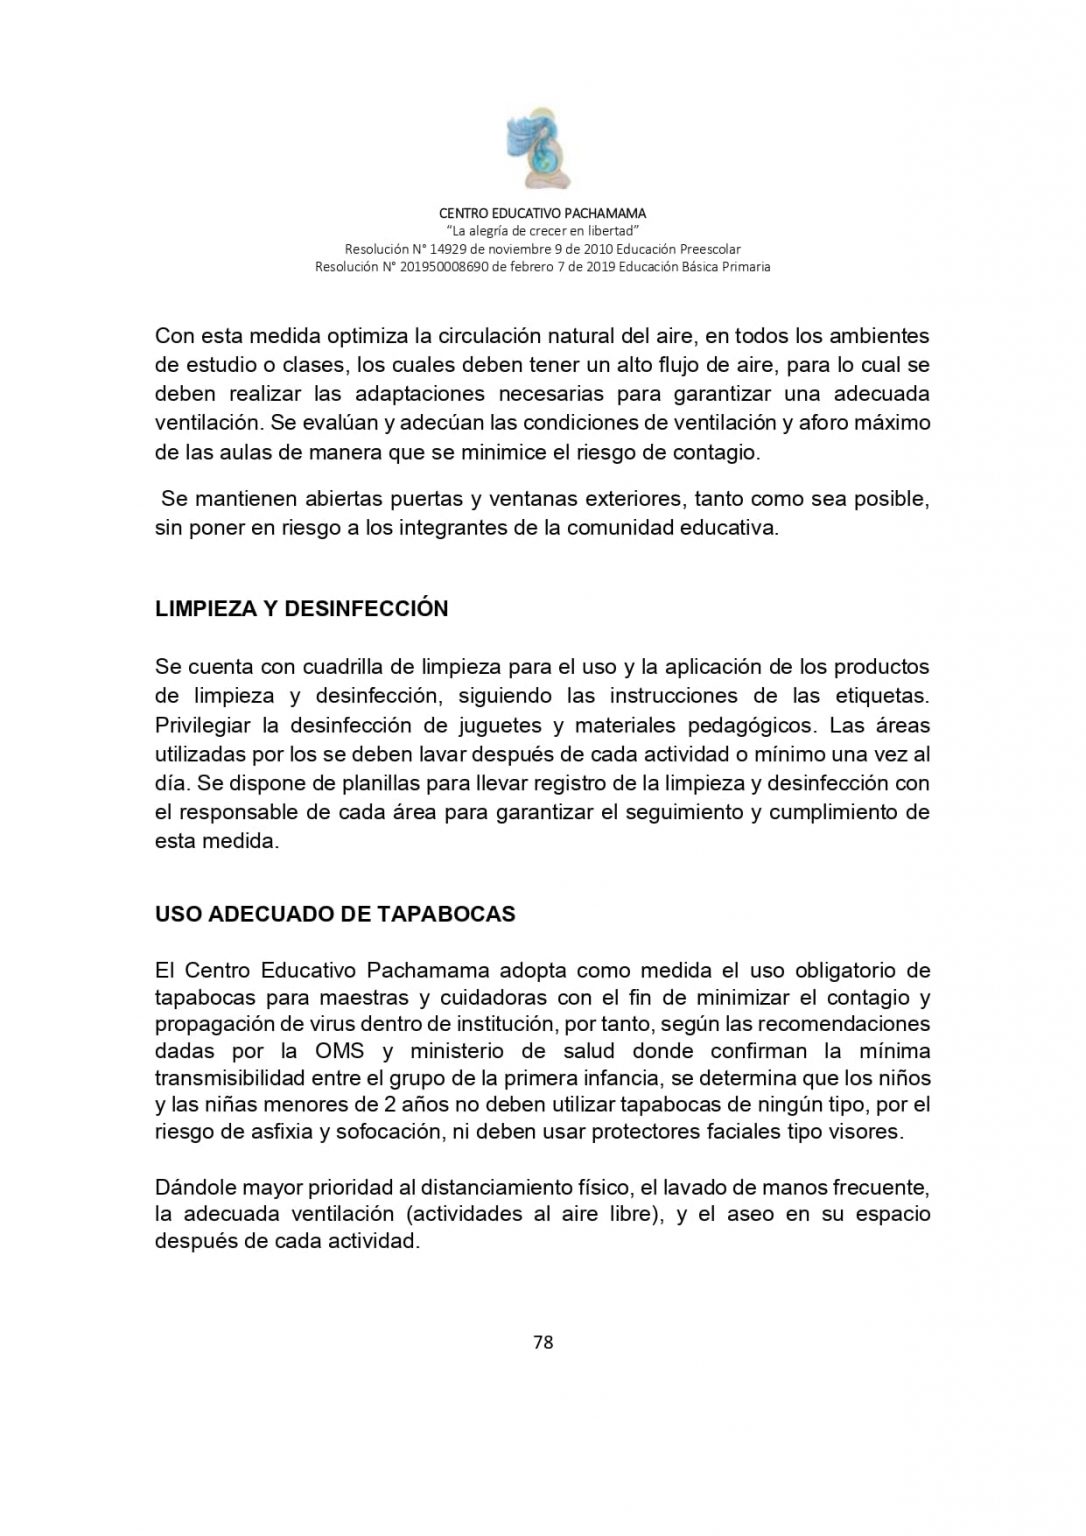 PROTOCOLO DE BIOSEGURIDAD PACHAMAMA Última Versión (3)-convertido_page-0078